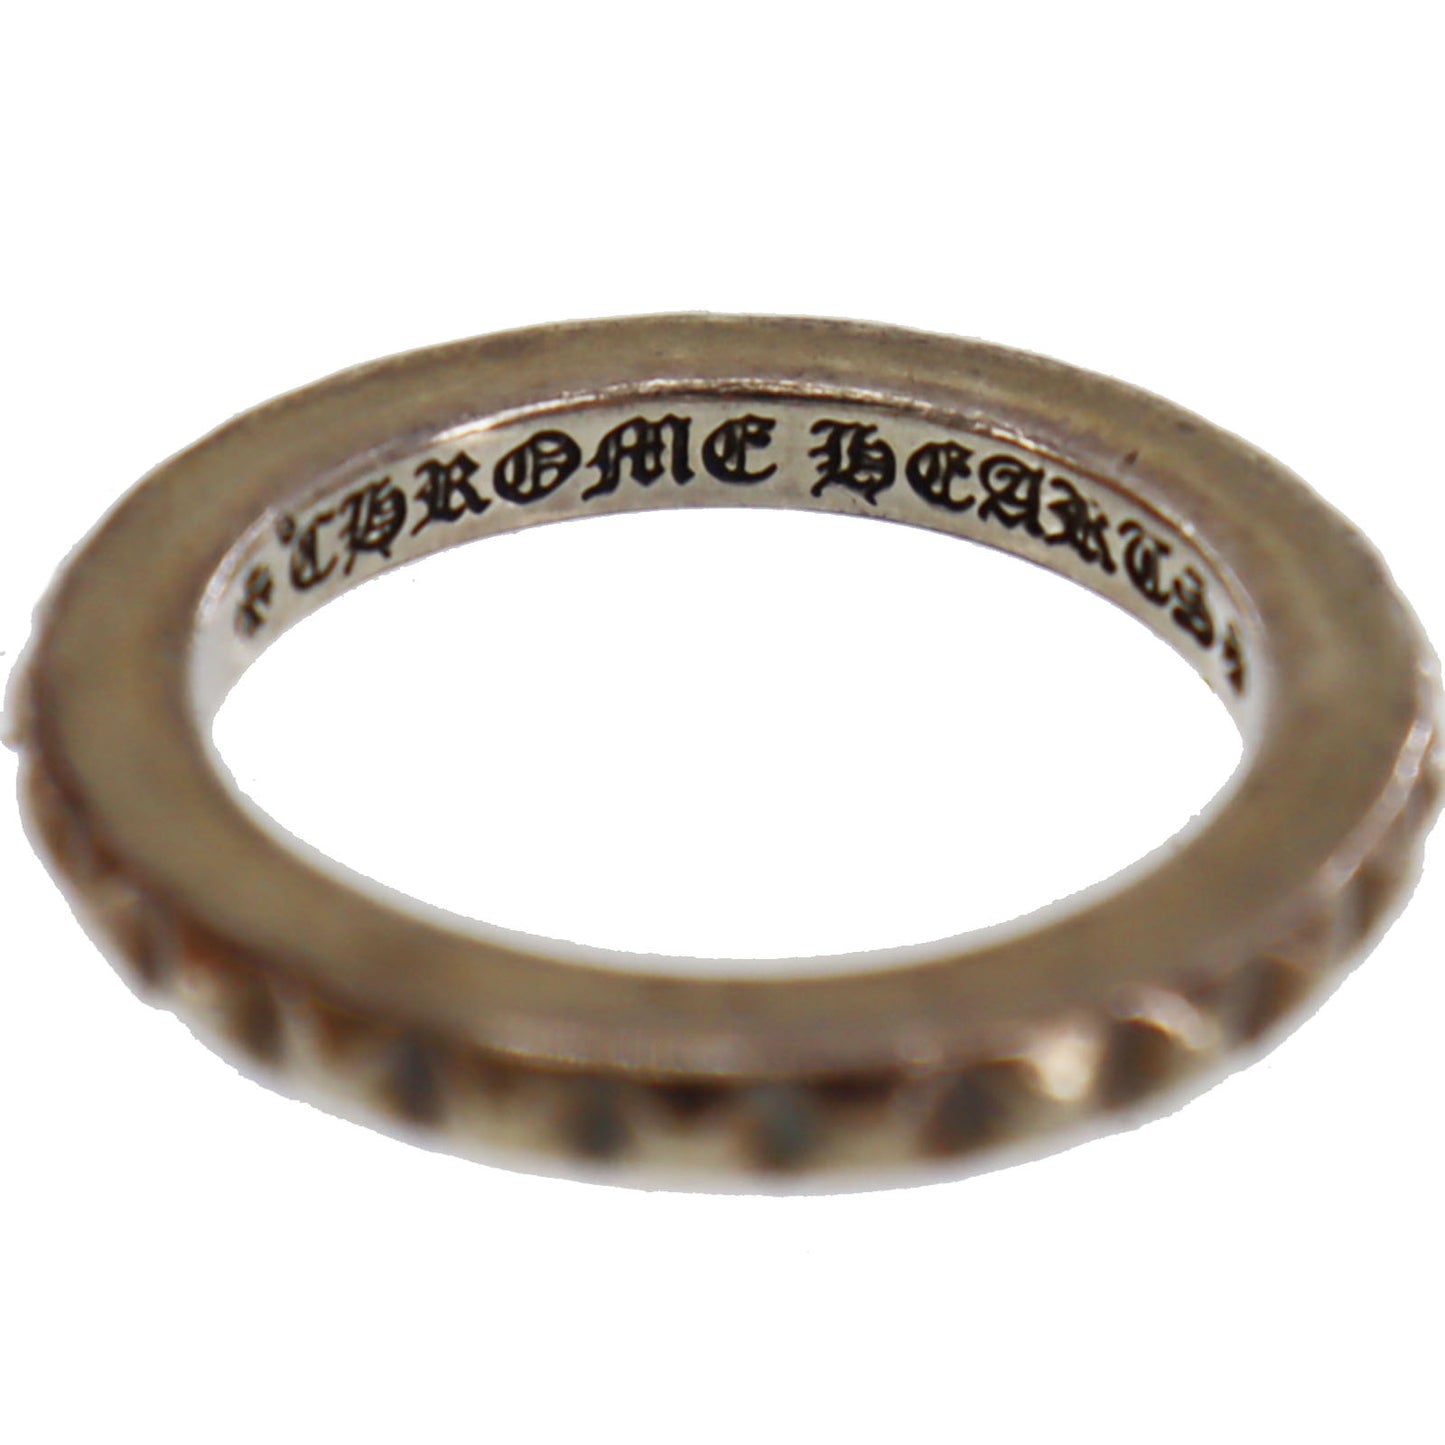 Chrome Hearts Cross Finger Ring Silver 925 #AG296